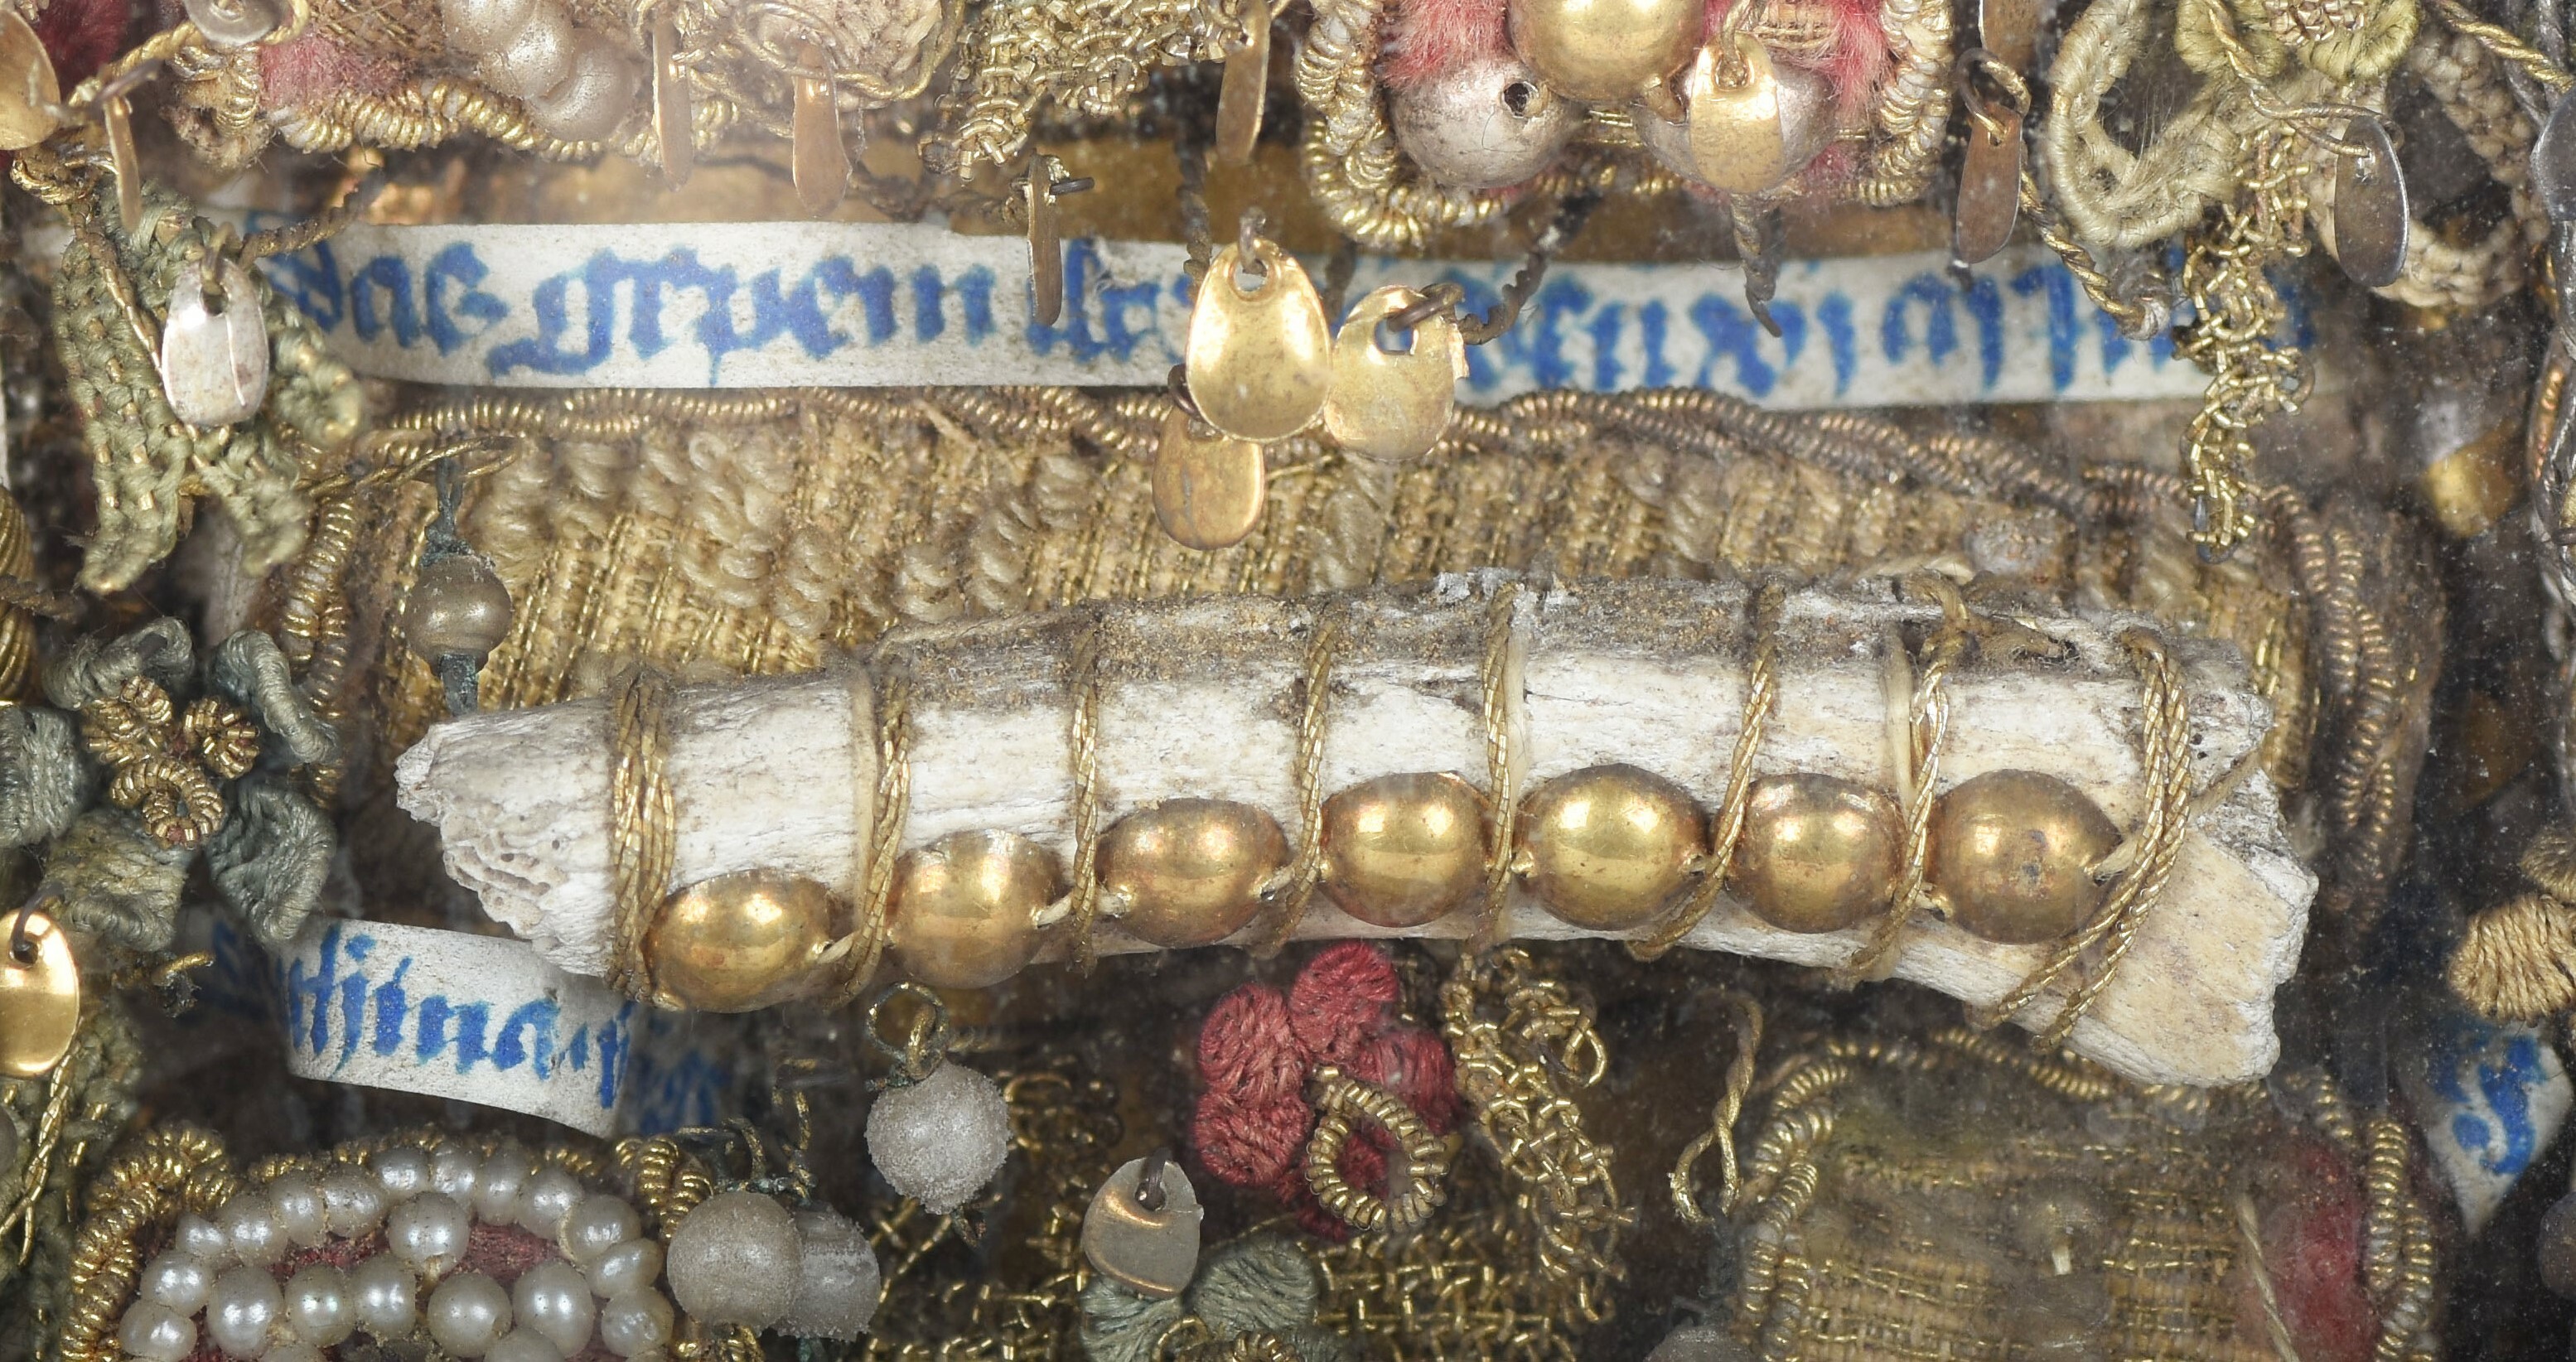 Onverpakt botreliek uit de eerste reliekenkast ©CO7 – collectie Sint-Maartenskathedraal